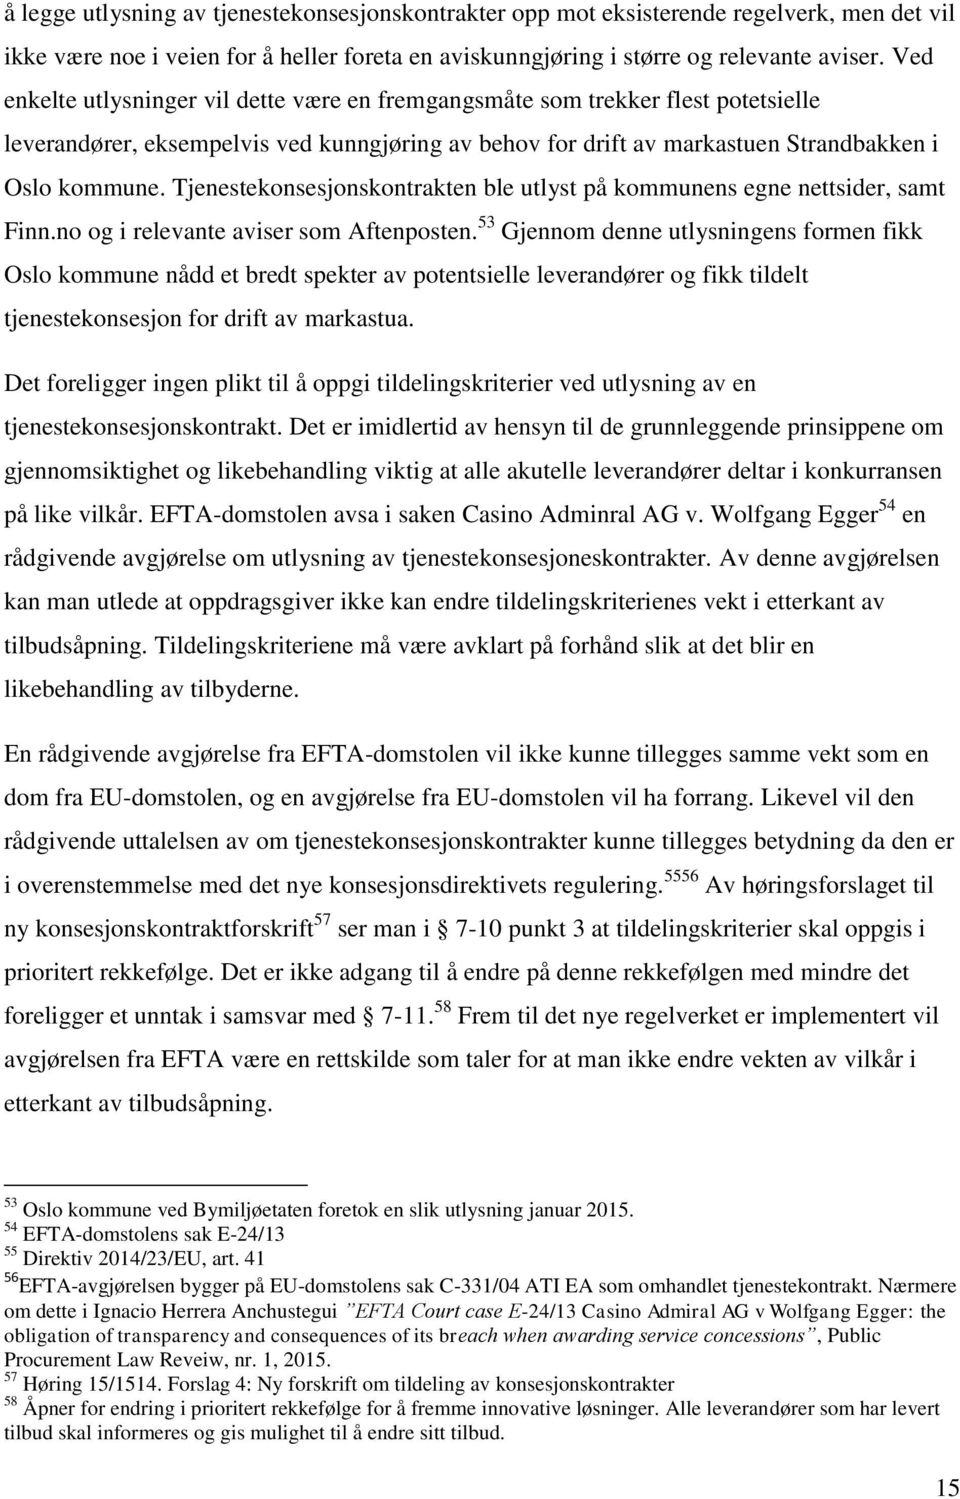 Tjenestekonsesjonskontrakten ble utlyst på kommunens egne nettsider, samt Finn.no og i relevante aviser som Aftenposten.